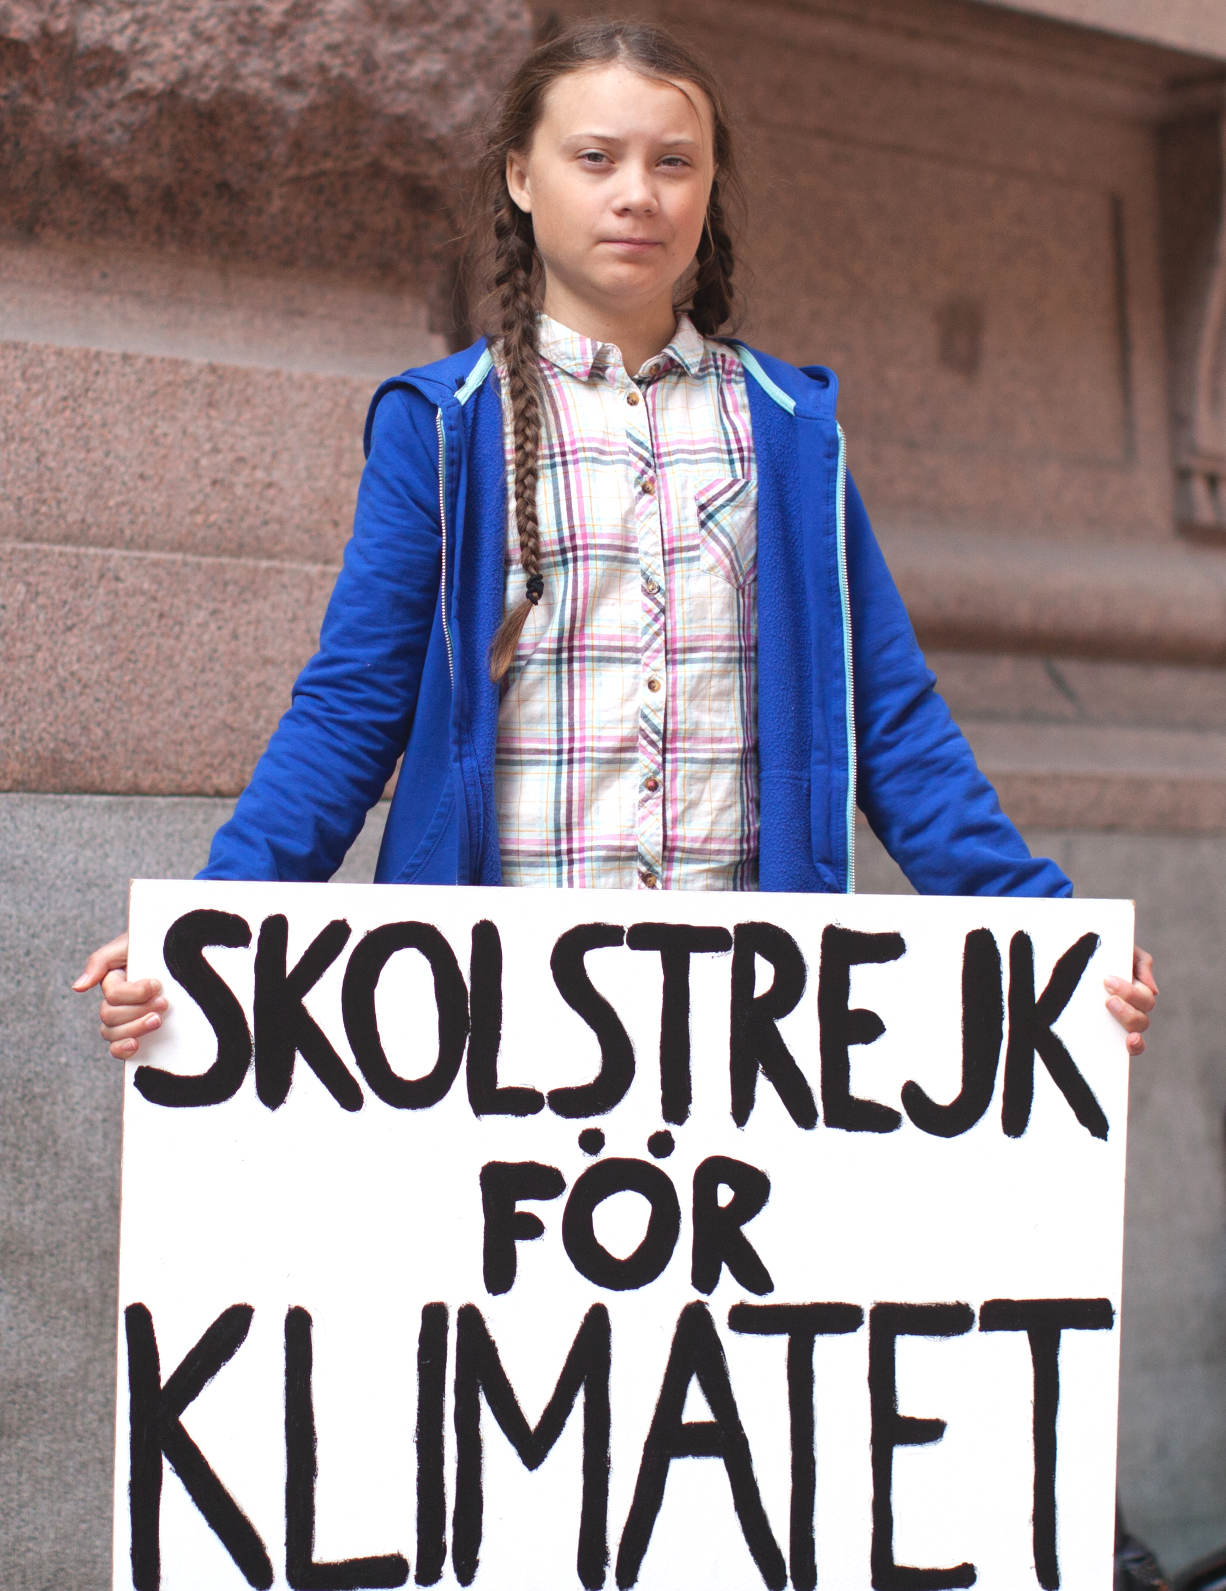 Greta Thunberg with her Skolstrejk For Klimatet sign in Sweden